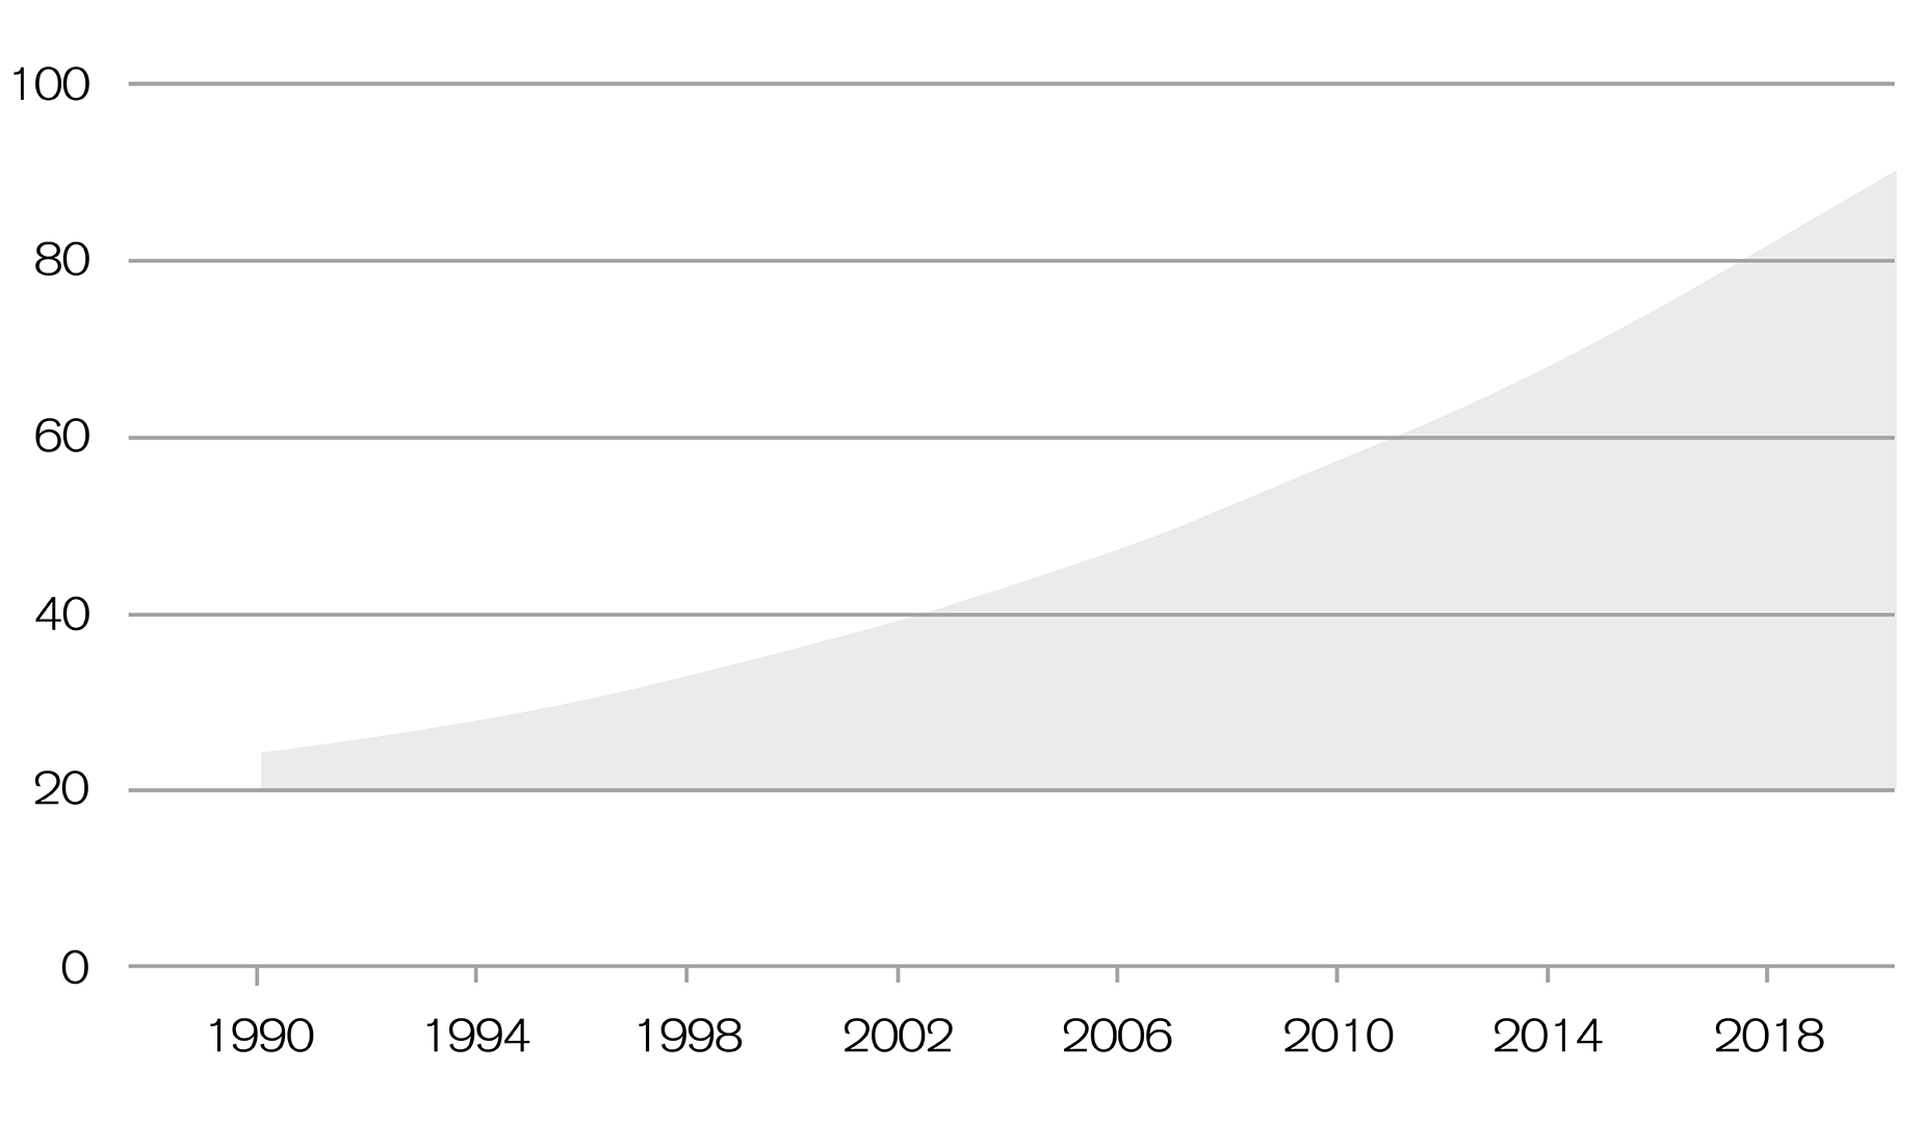 Inheritances in Switzerland have quintupled since 1990